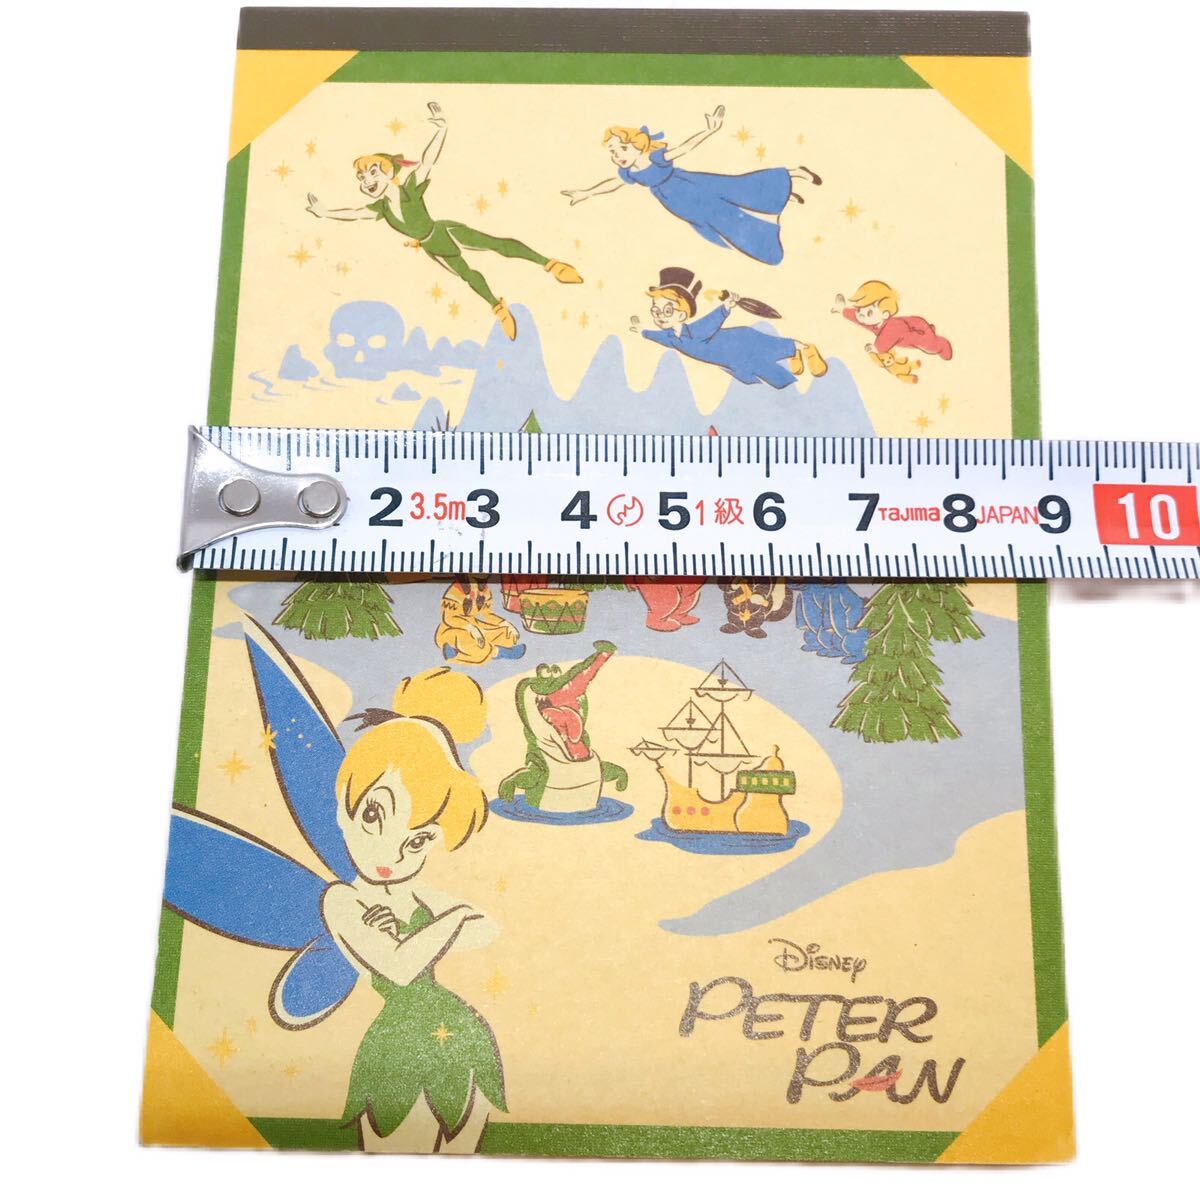  Peter Pan [Peter Pan] Disney Disney memo pad sun-star Sunstar USED